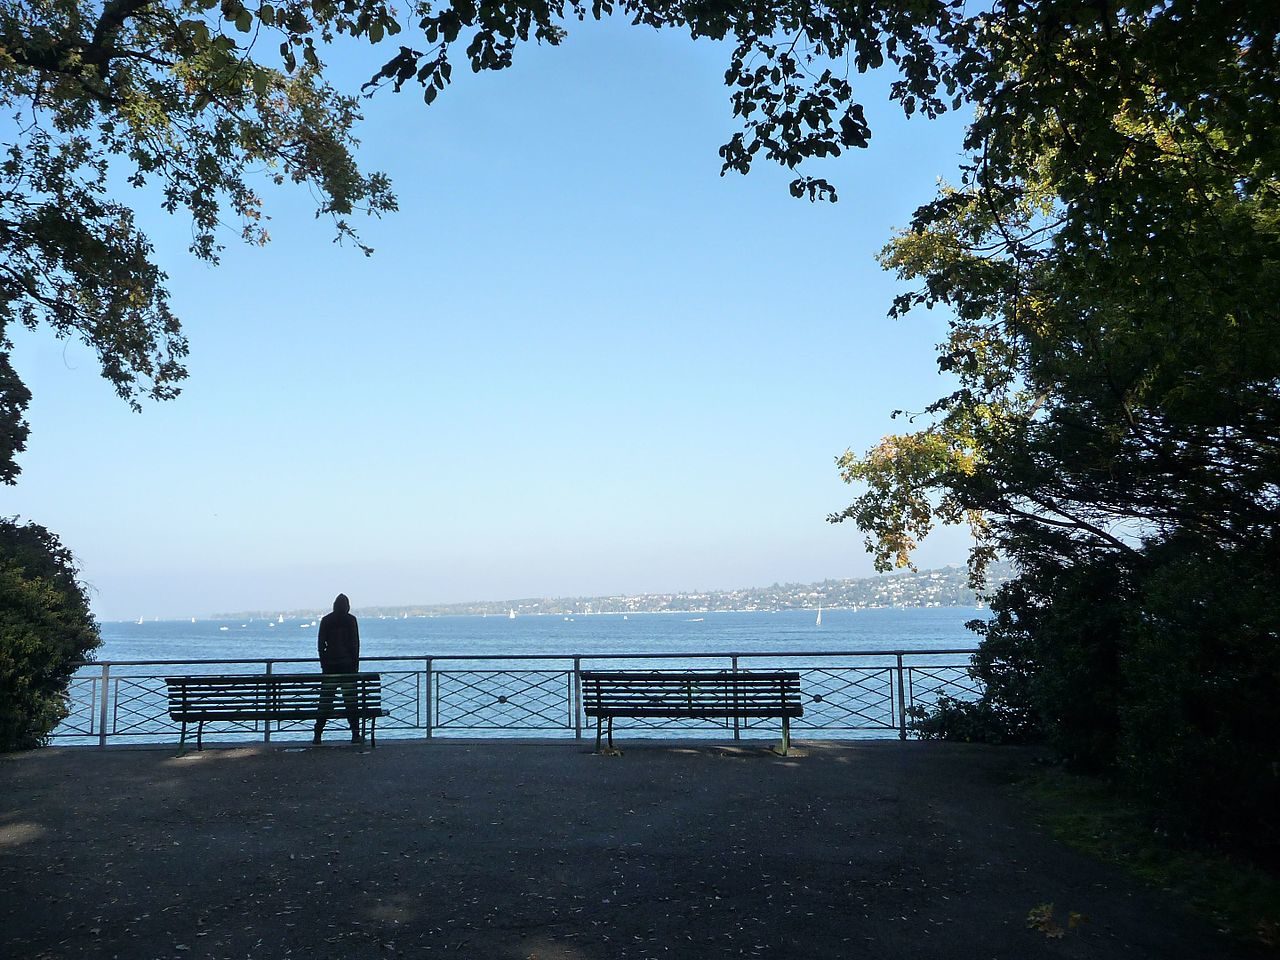 On voit, de loin, un homme qui regarde le lac de Genève. Près de lui, deux bancs. Des feuillages encadrent l'image.